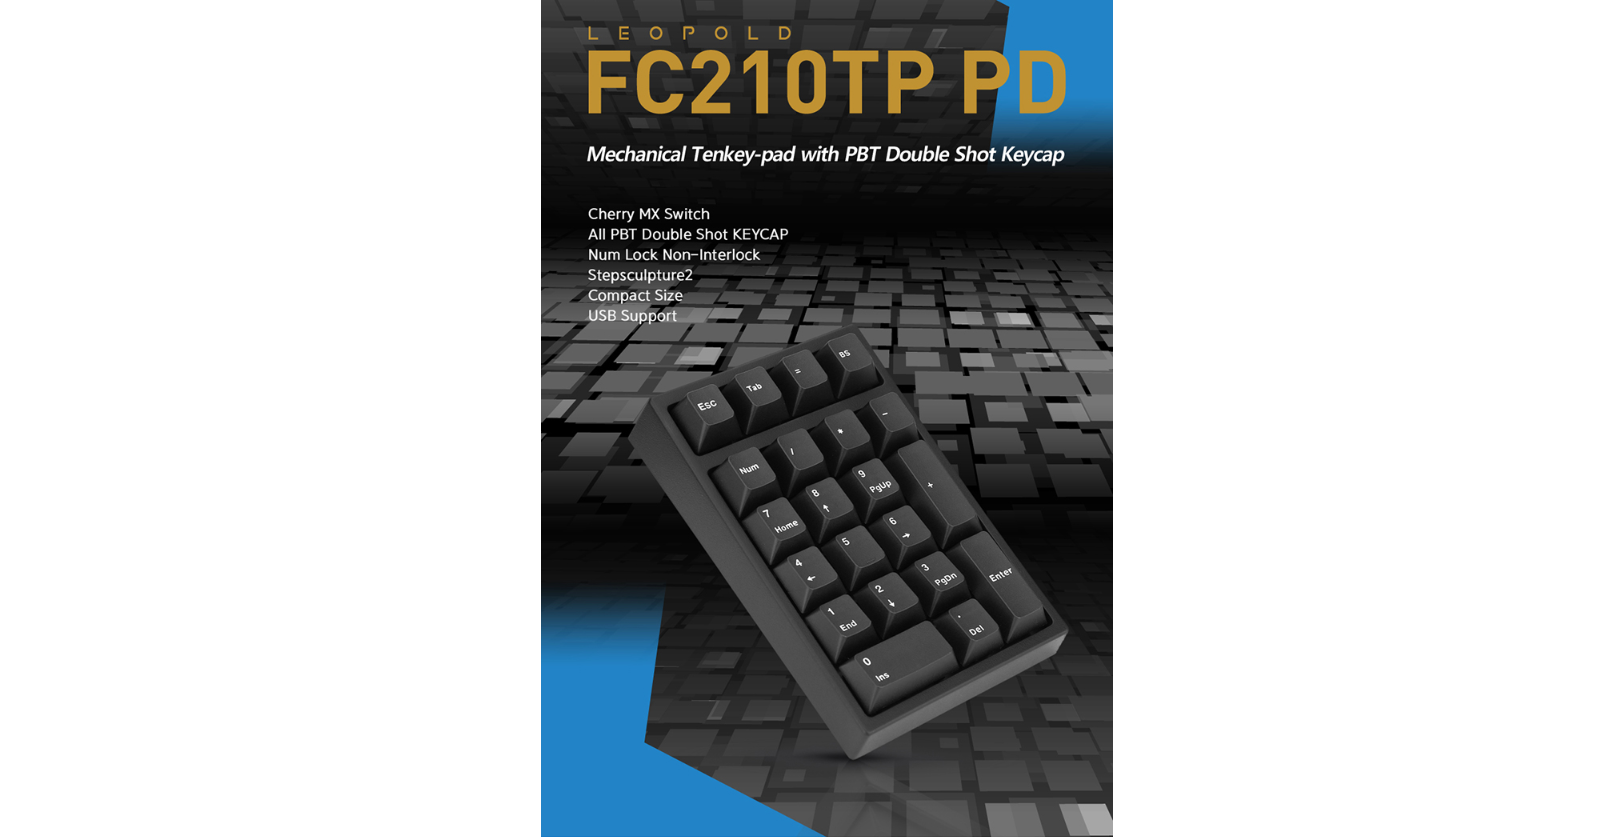 Giới thiệu về bàn phím Leopold FC210PT